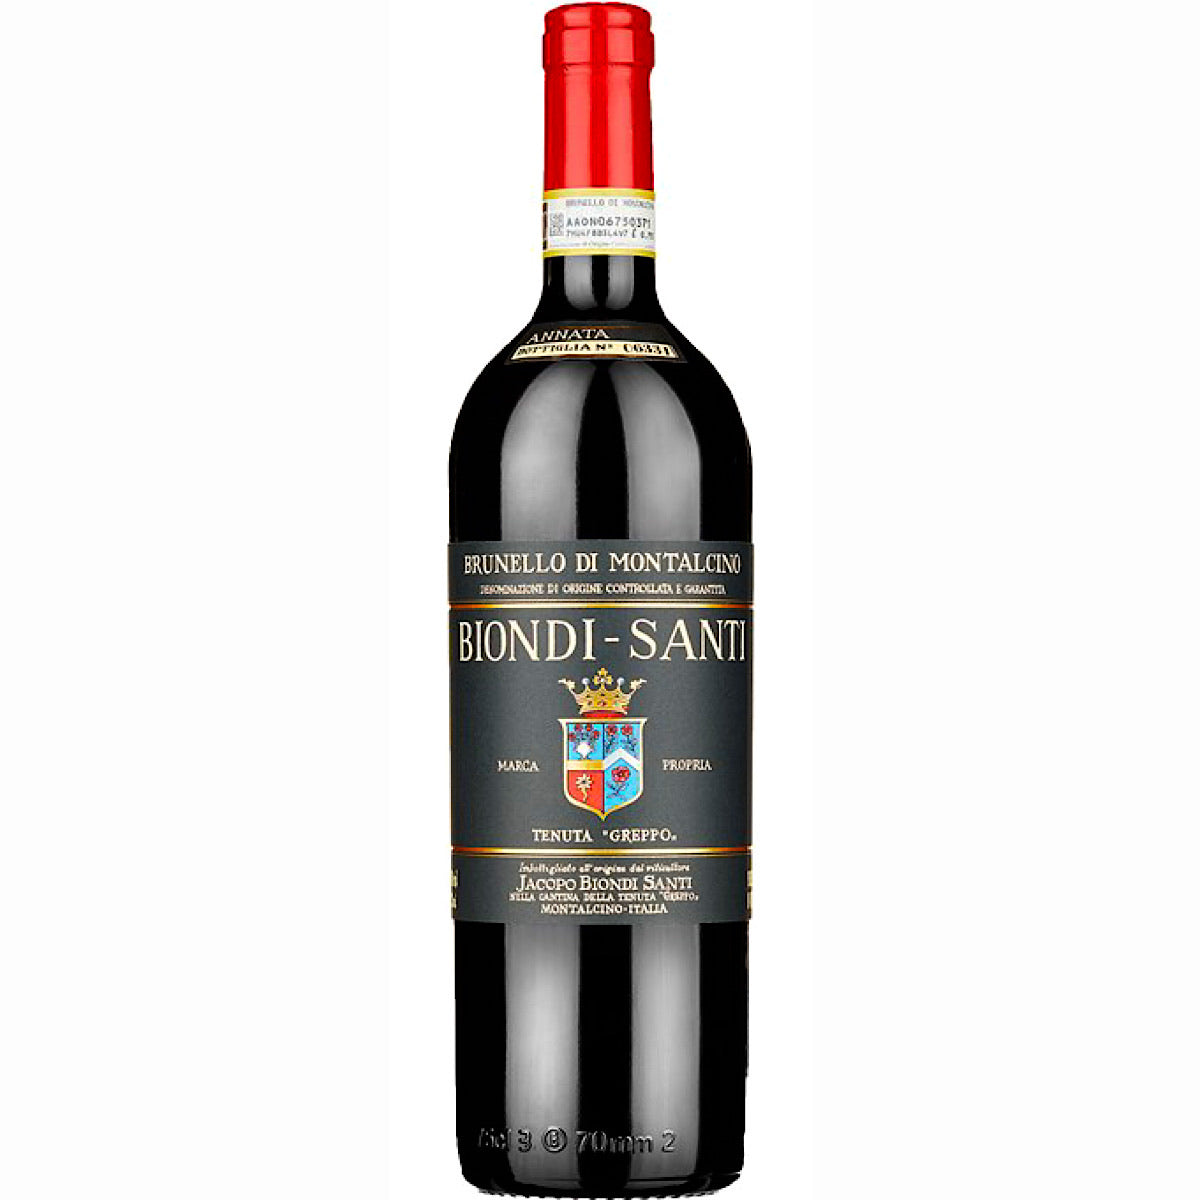 Brunello di Montalcino Tenuta Greppo, Biondi Santi 6 Bottle Case 75cl